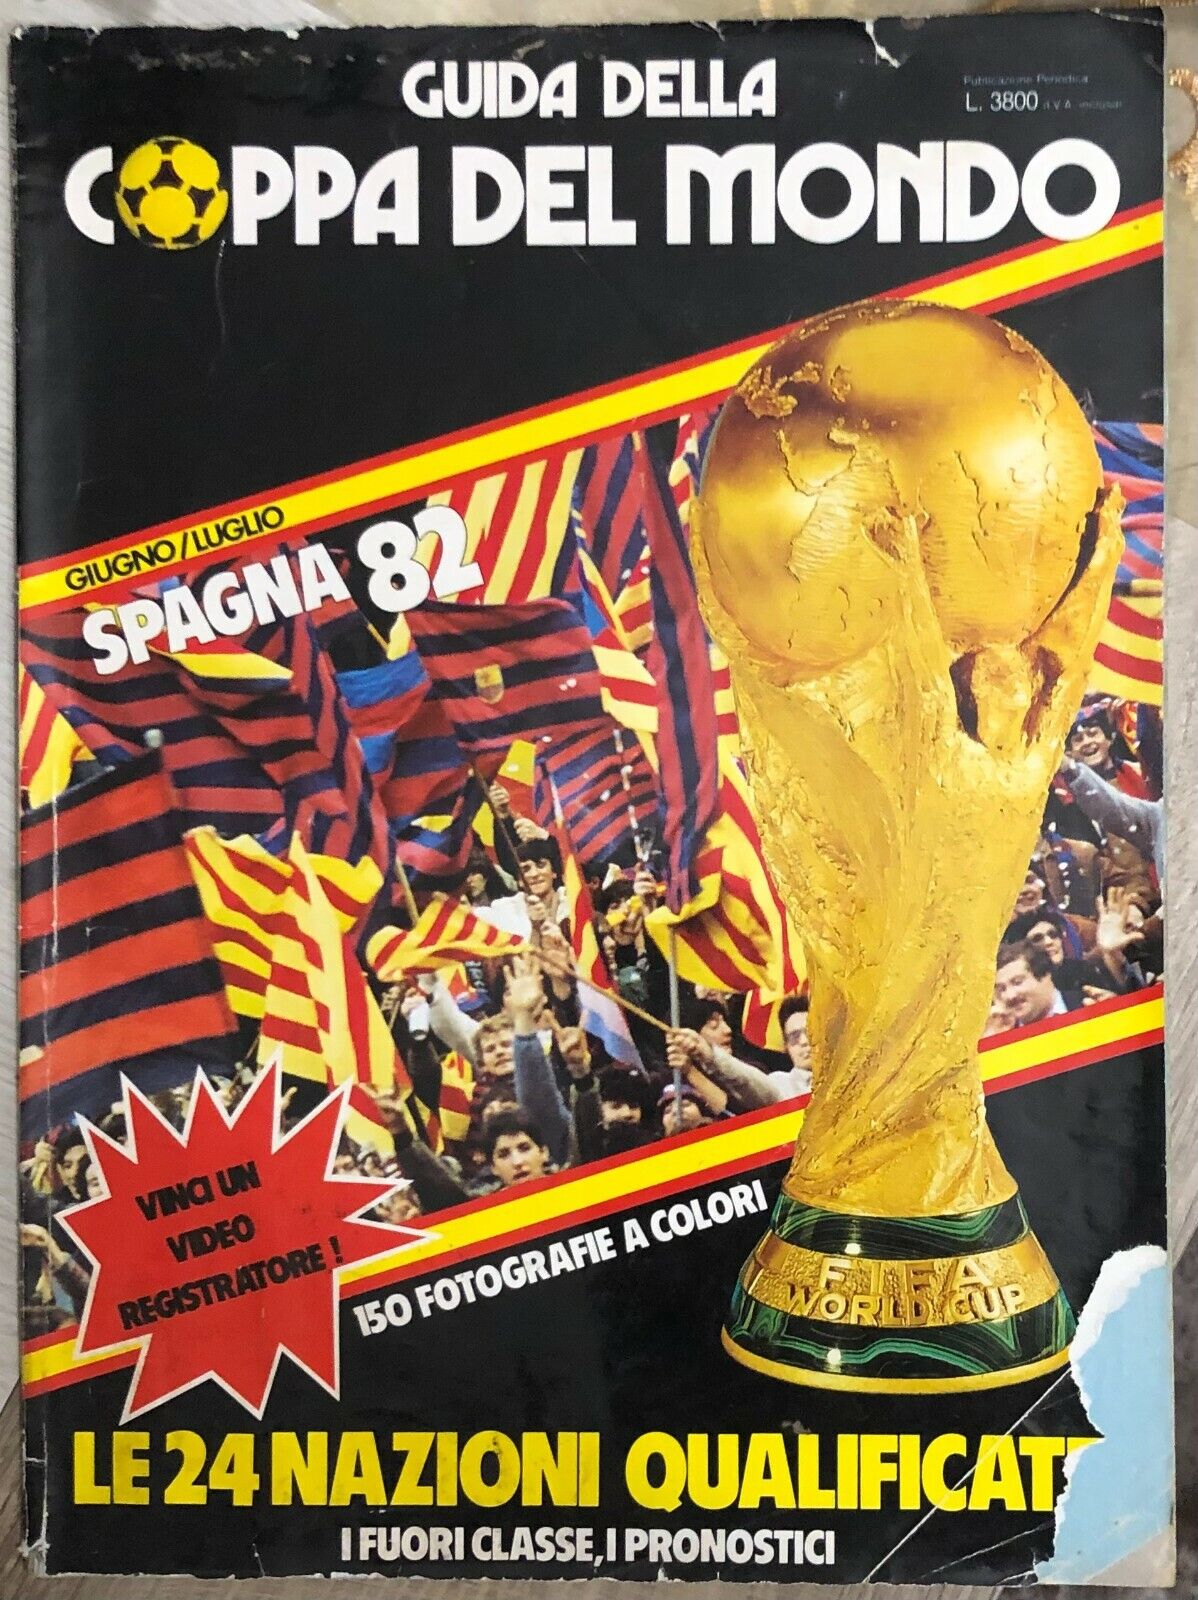 Guida della Coppa del Mondo Spagna 82 di Aa.vv.,  1982,  Editions Du Monde